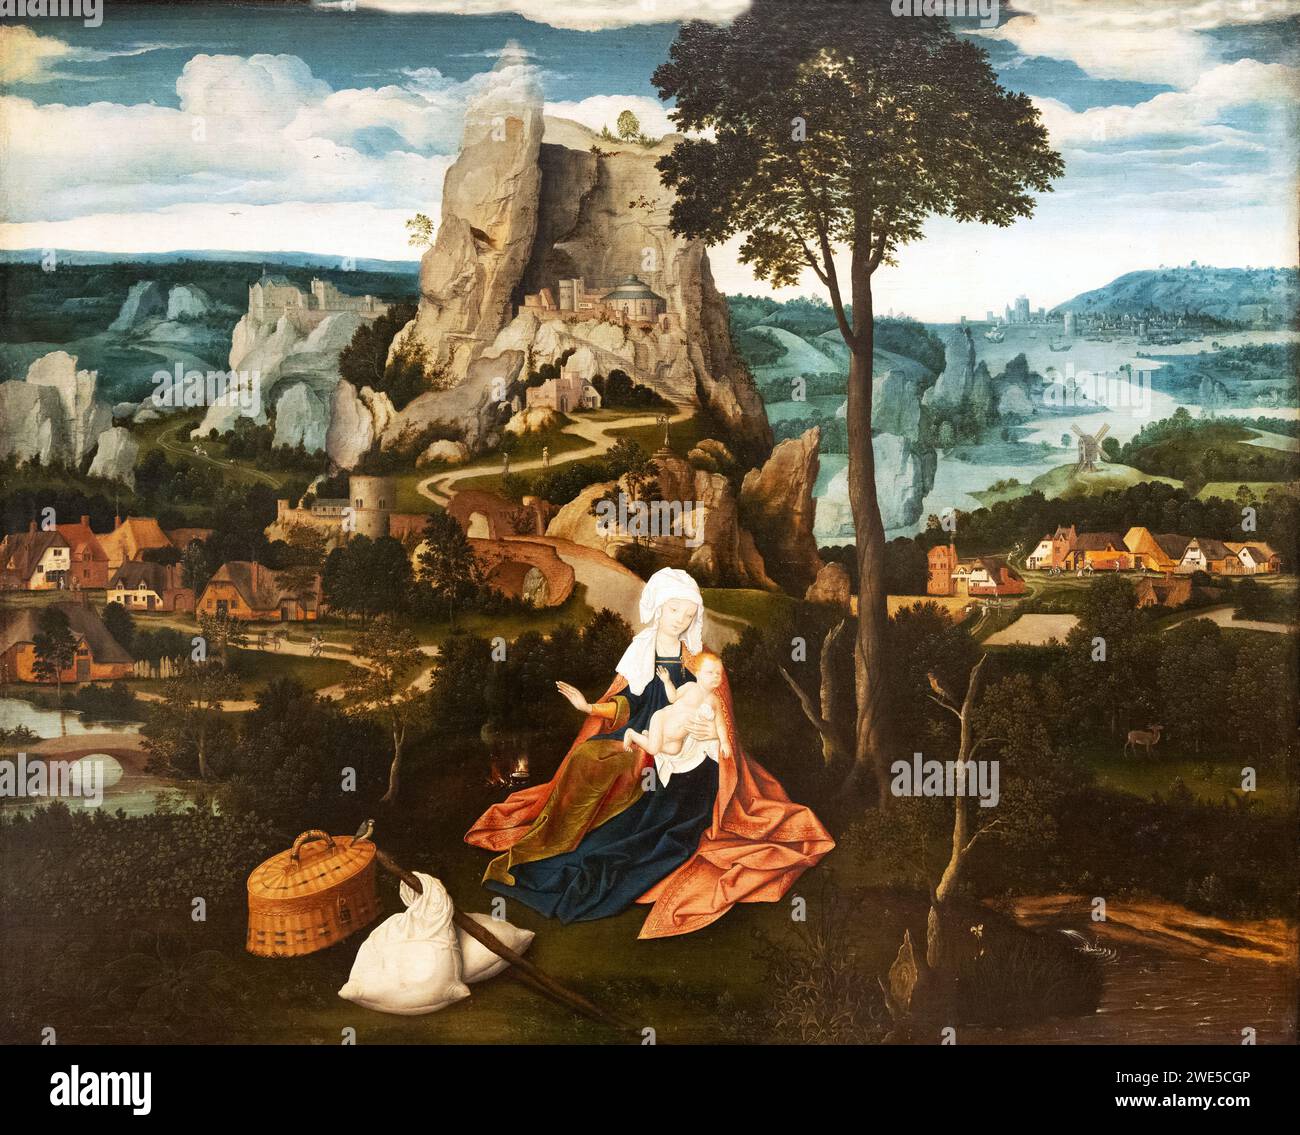 Peinture de Joachim Patinir, 'repos sur le vol en Egypte', c. 1520. Peintre de paysage et d'histoire de la Renaissance flamande, 1483-1524 Banque D'Images